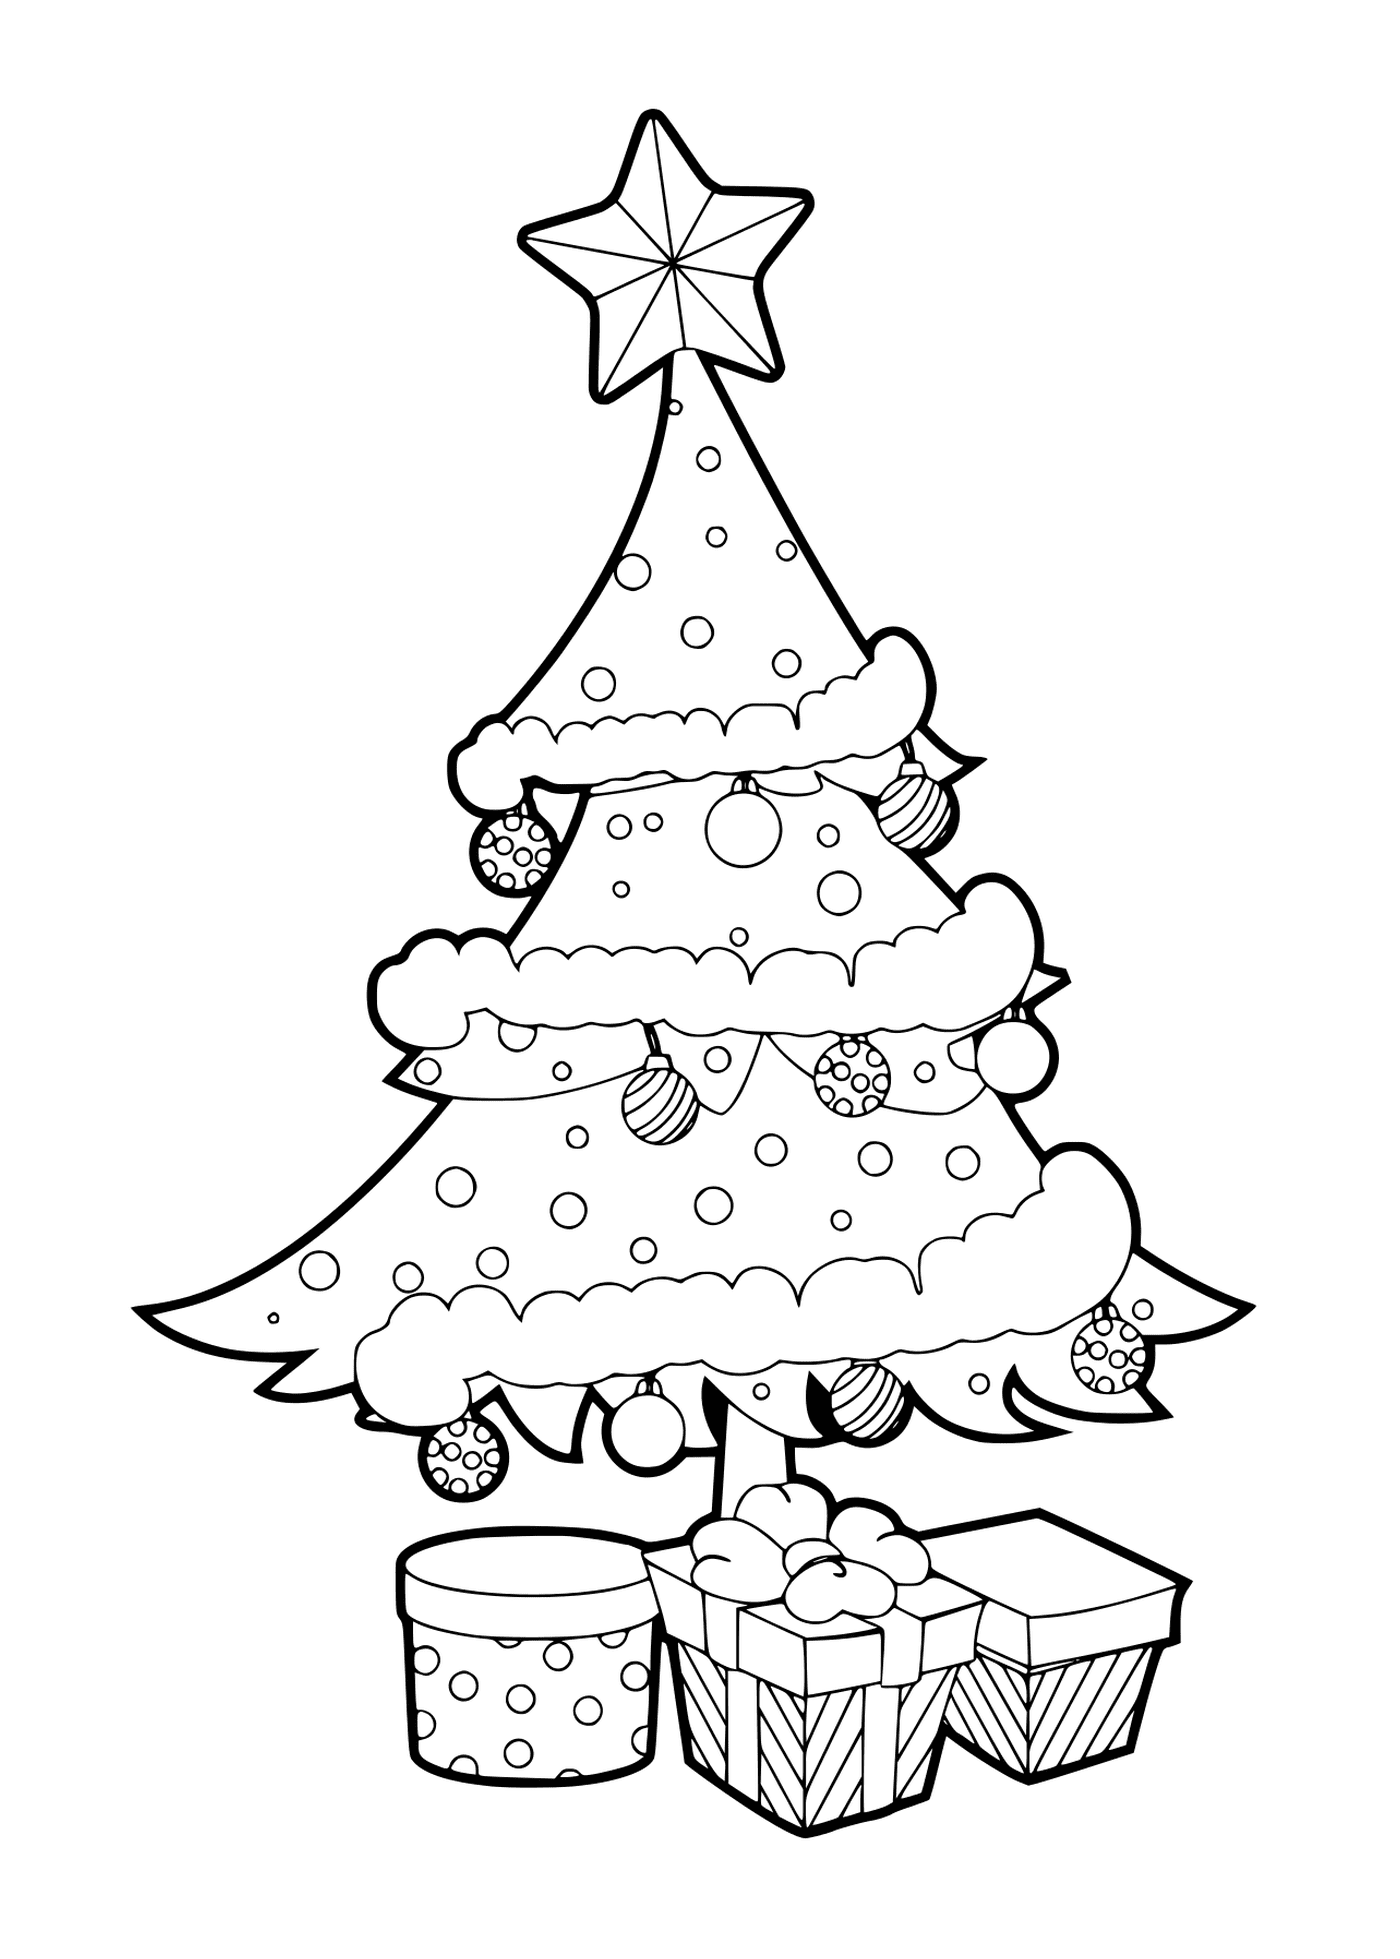  क्रिसमस के पेड़ को गेंदों और उपहारों से सजाया गया 